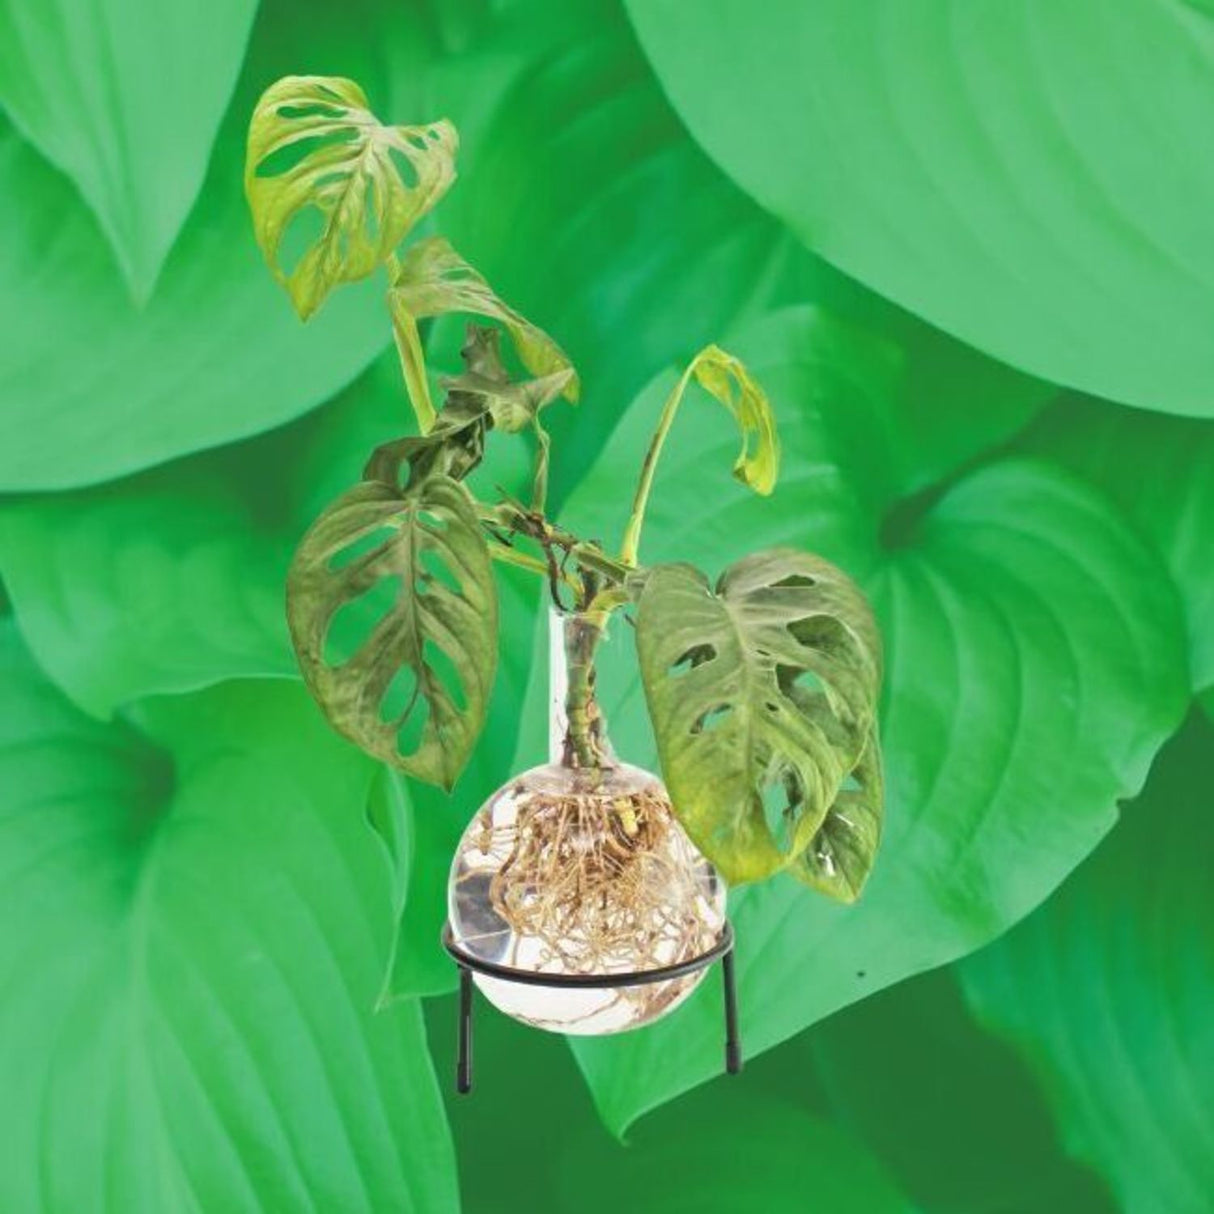 Flora Hydro Vase mit Metallständer